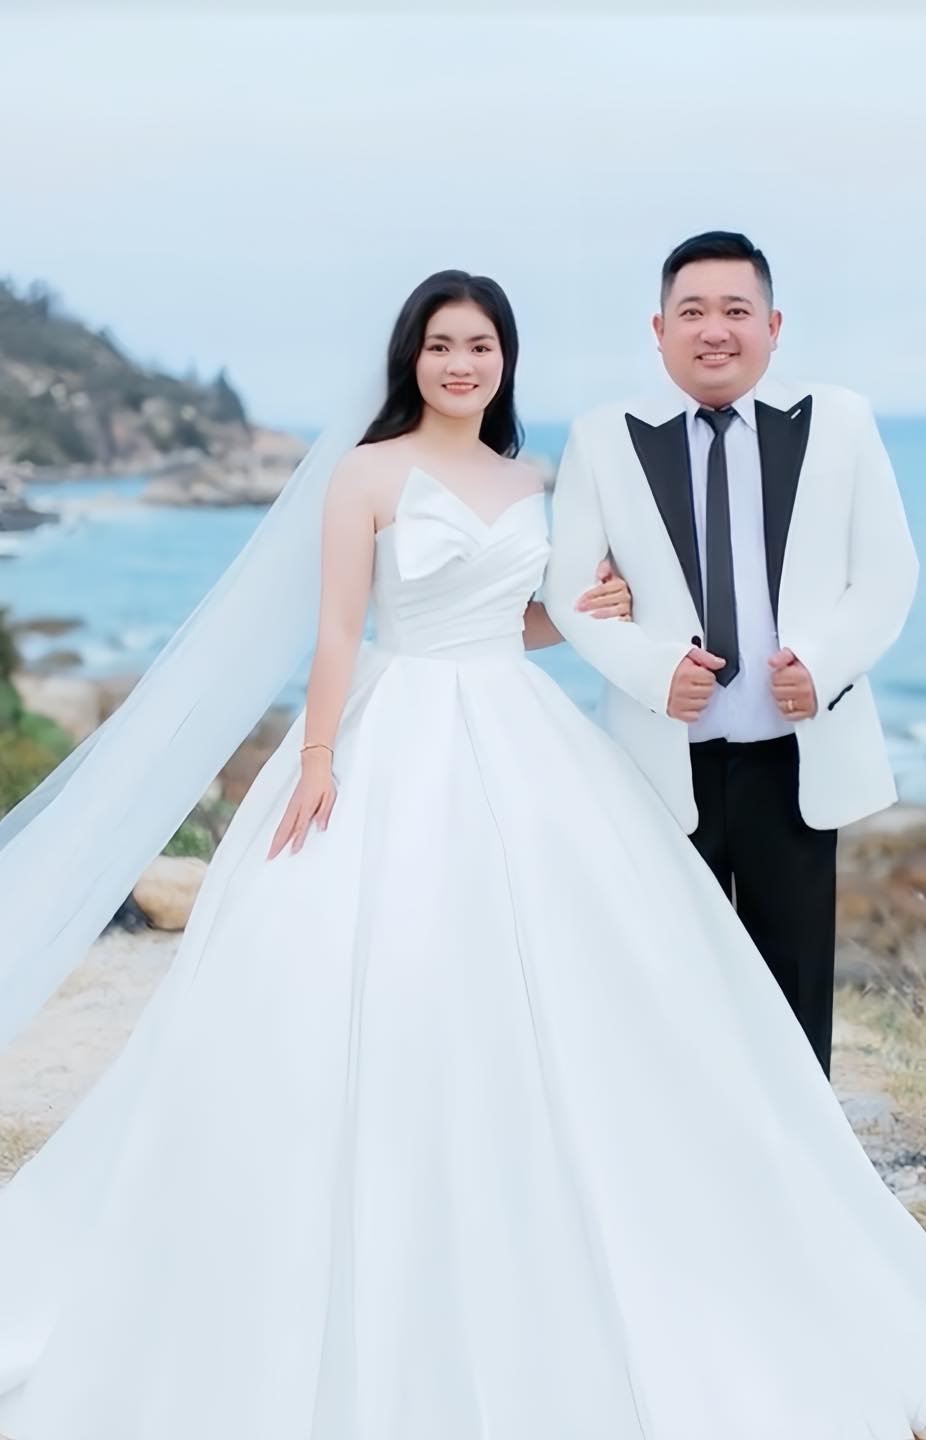 Ảnh cưới của Phùng Ngọc khiến netizen xôn xao